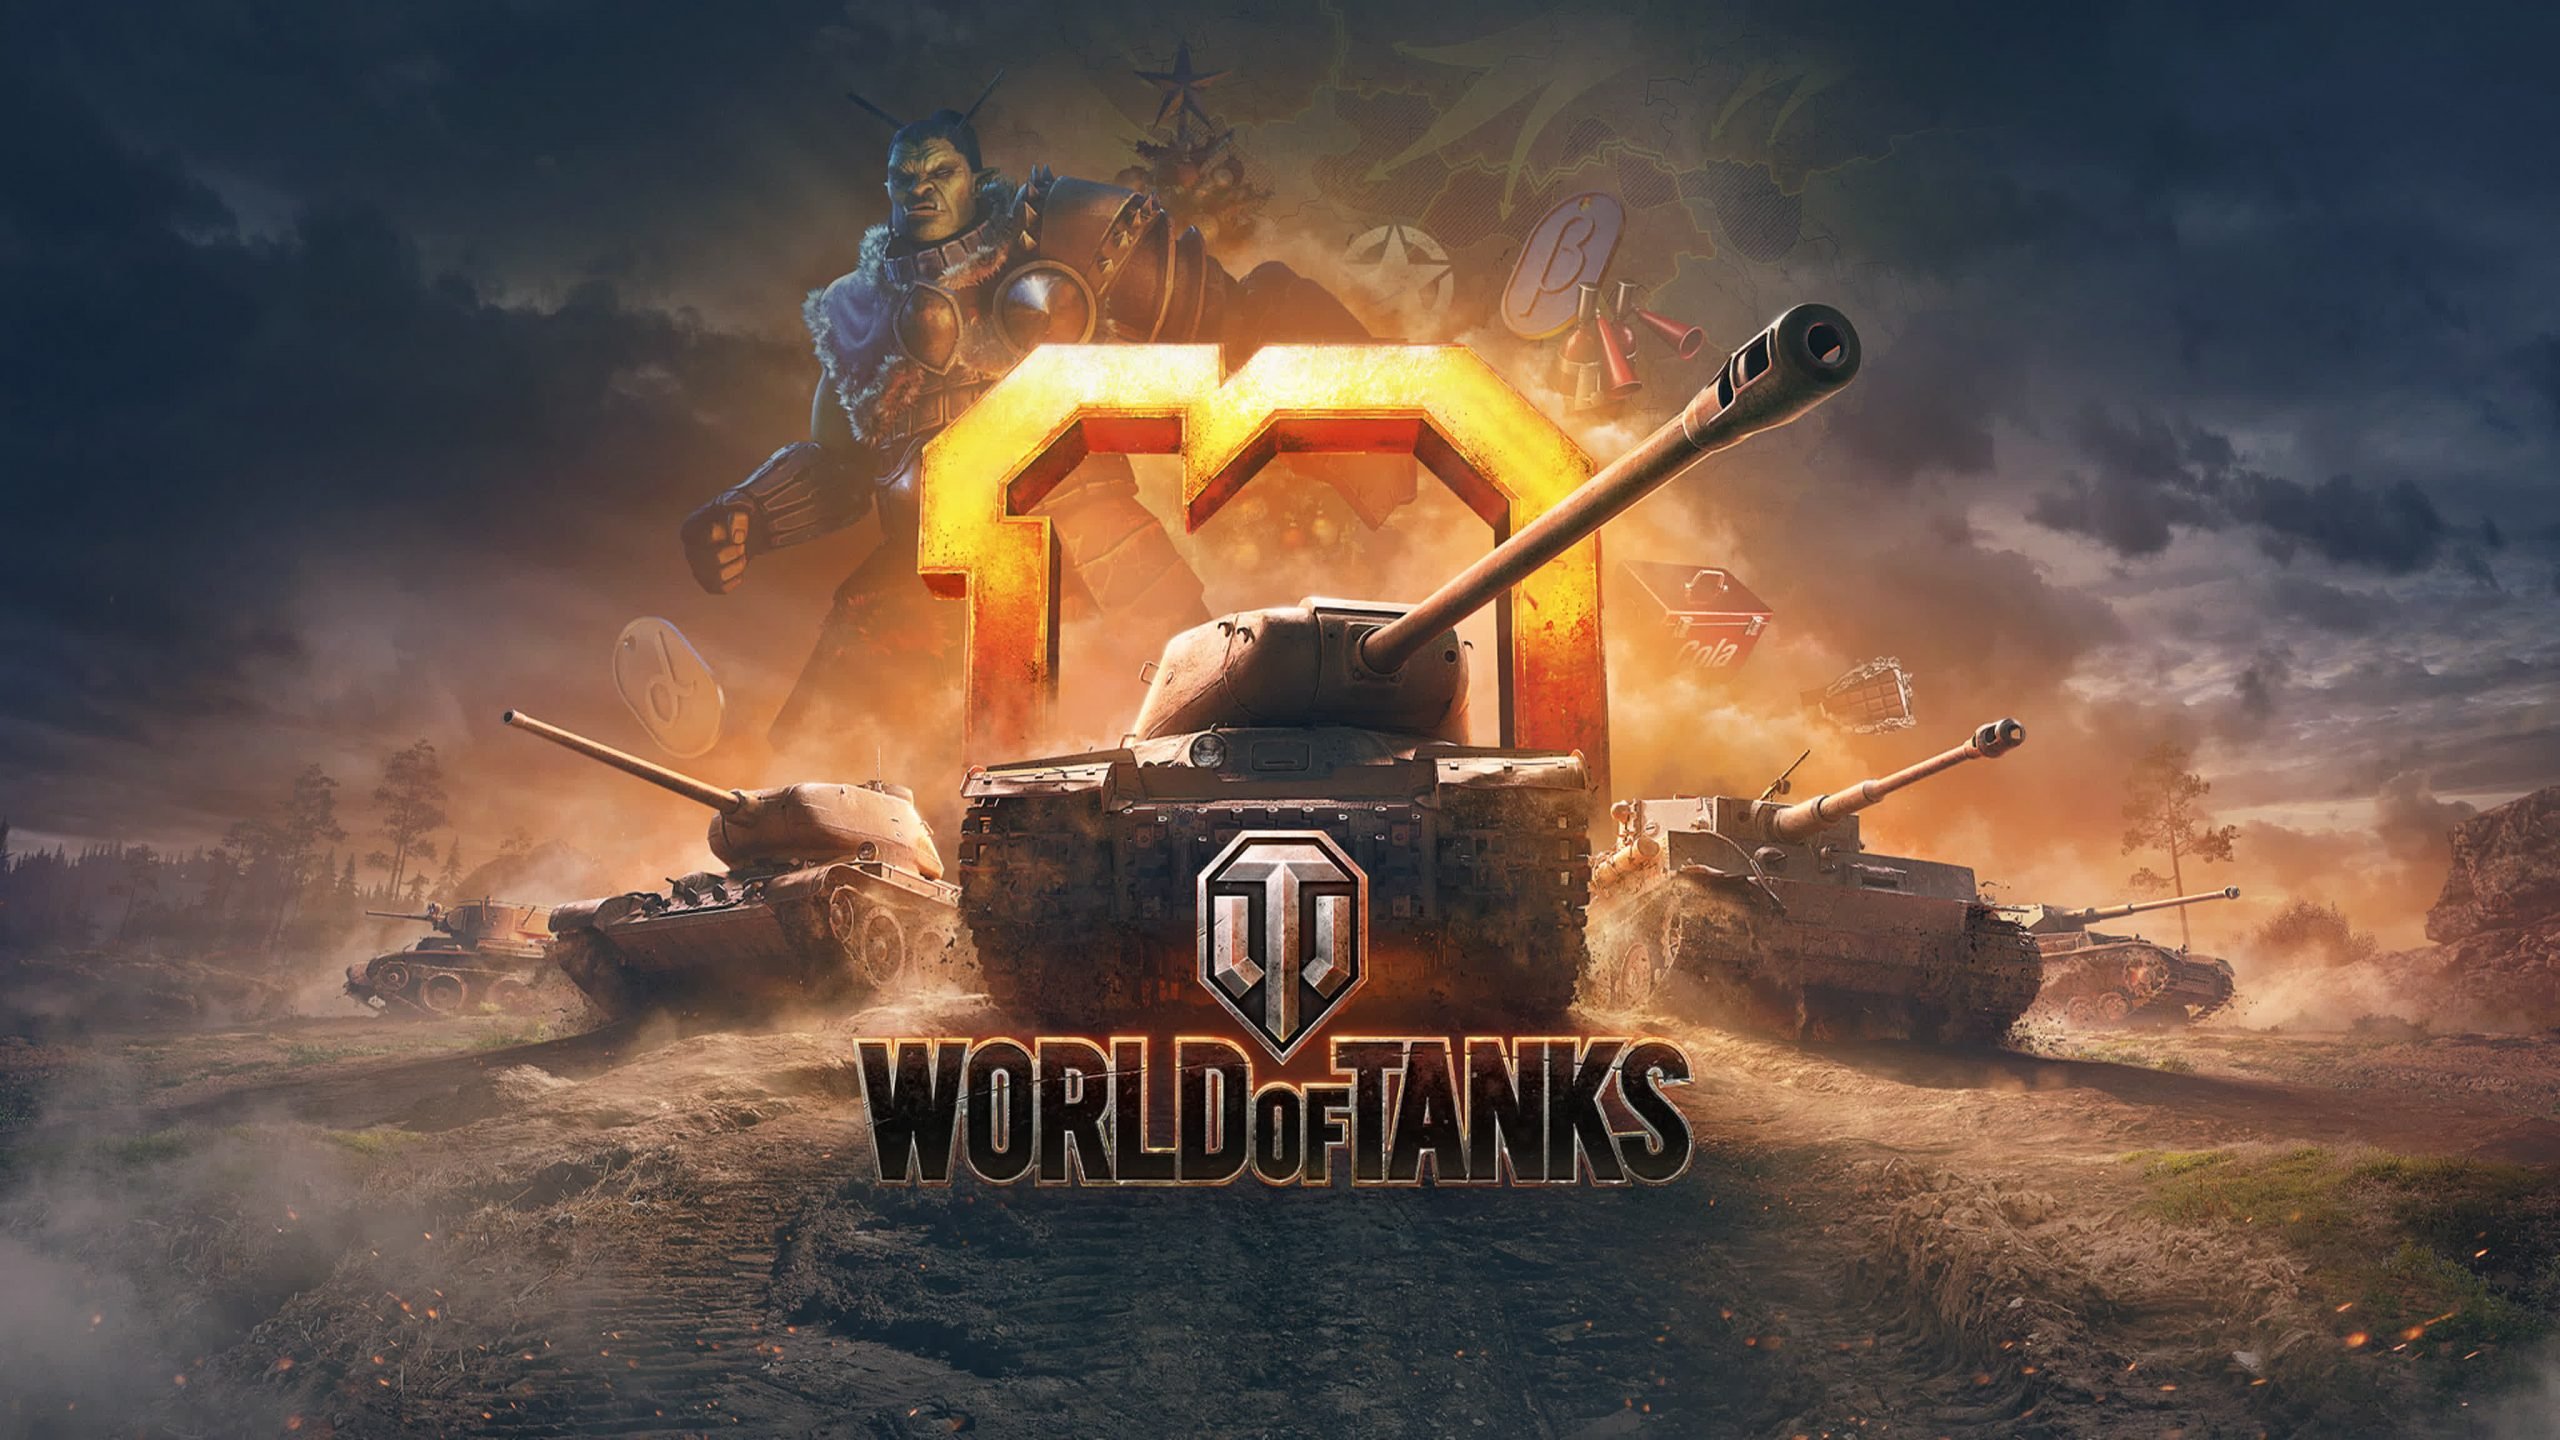 Мир танков разработчики. Игра World of Tanks. Танкифworld of Tanks. WOT картинки. World of Tanks обои на рабочий стол.